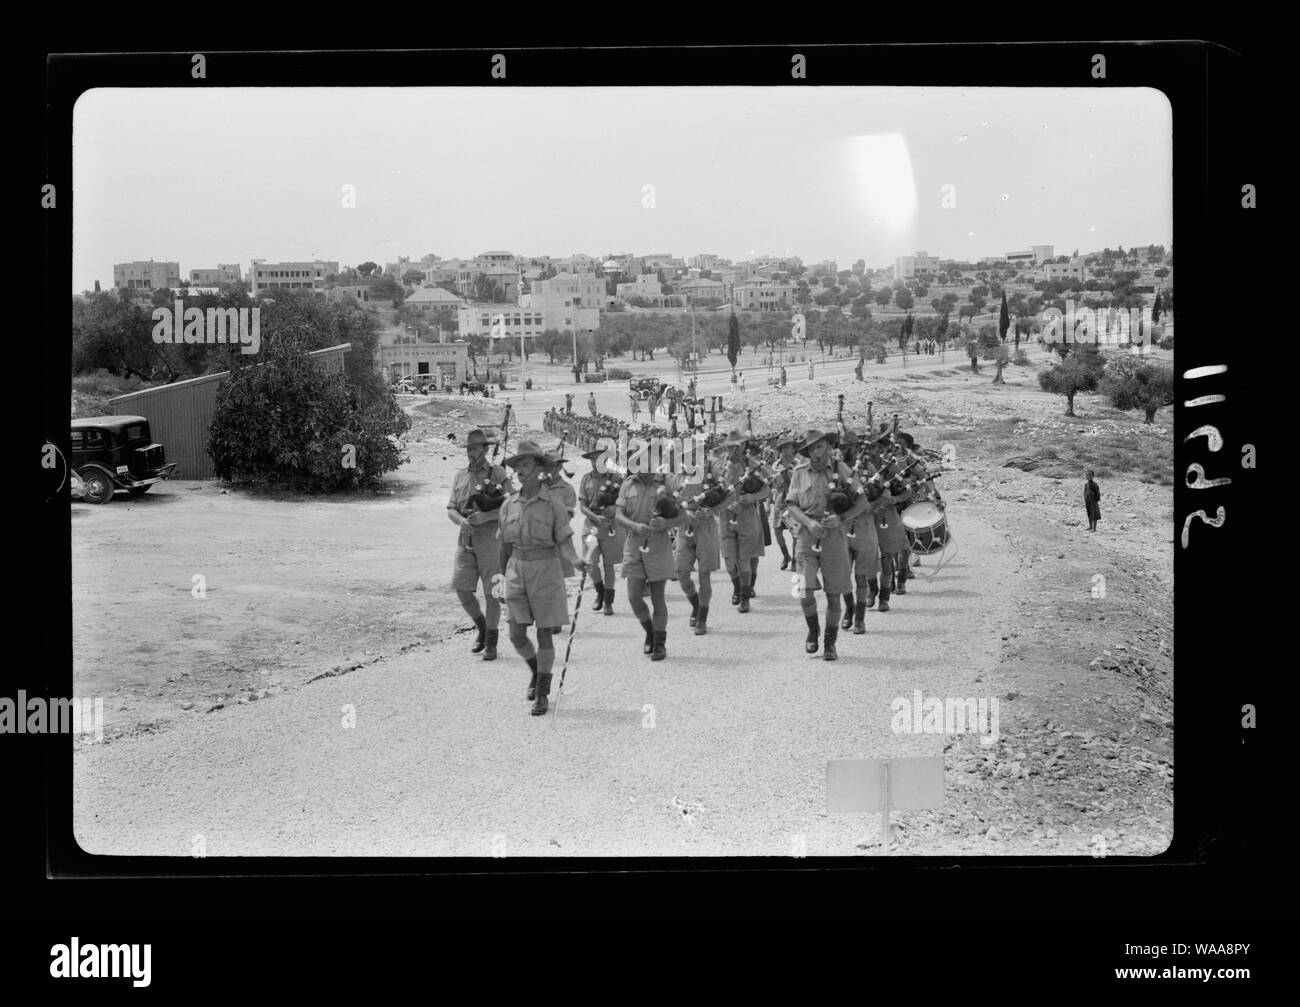 Chiesa parade presso la chiesa di S. Andrea il 11 agosto, 1940. Truppe che arrivano presso la chiesa preceduta dalla band Foto Stock